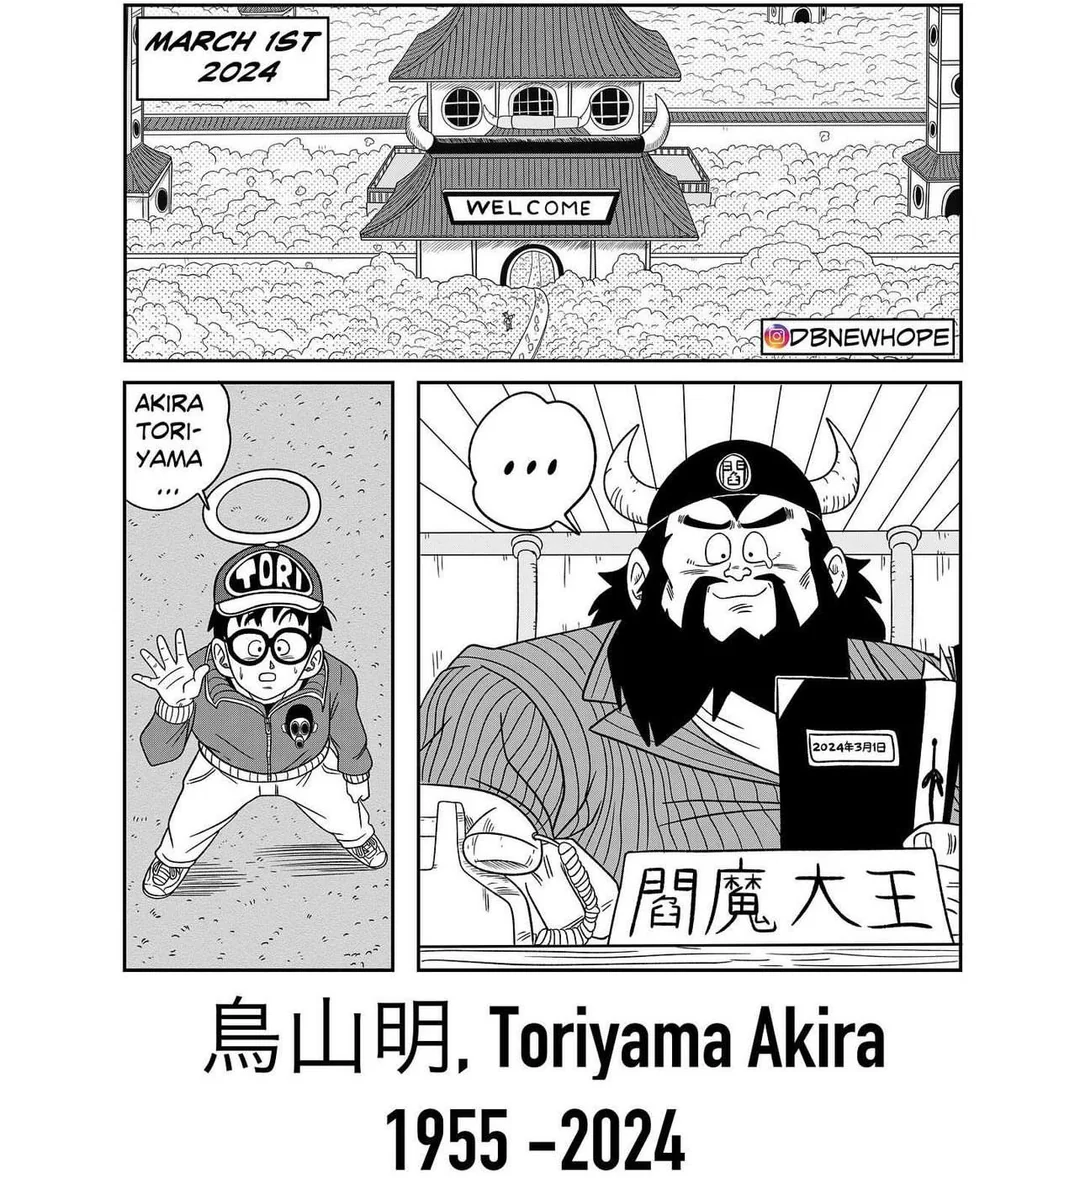 Akira Toriyama Hommage